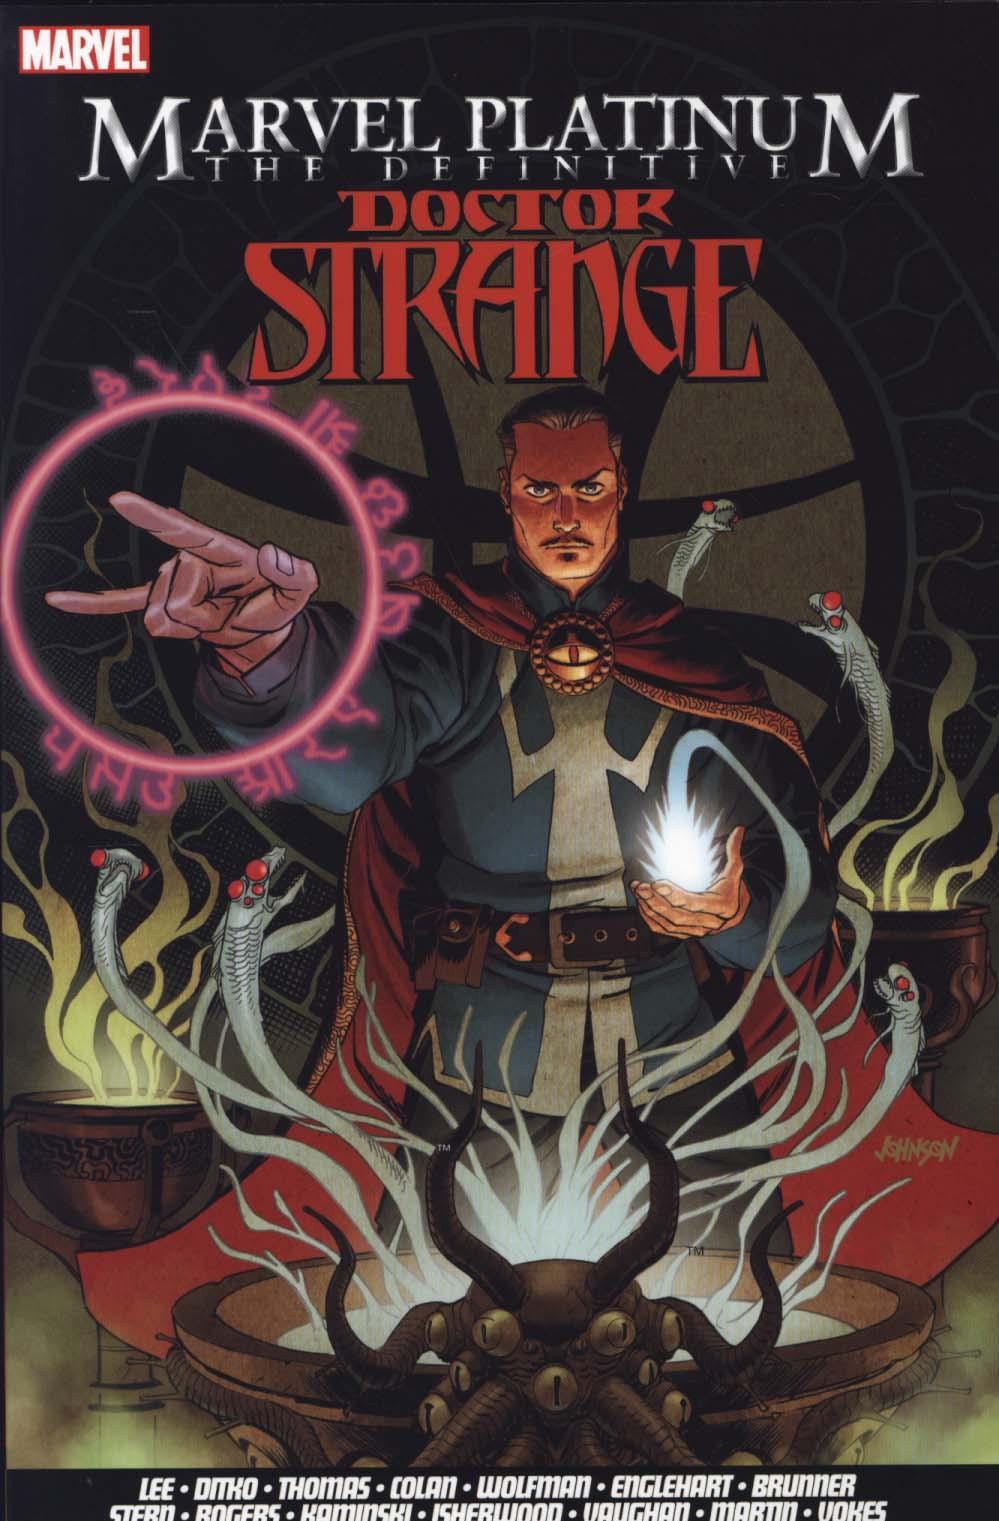 Marvel Platinum: The Definitive Doctor Strange - Stan Lee